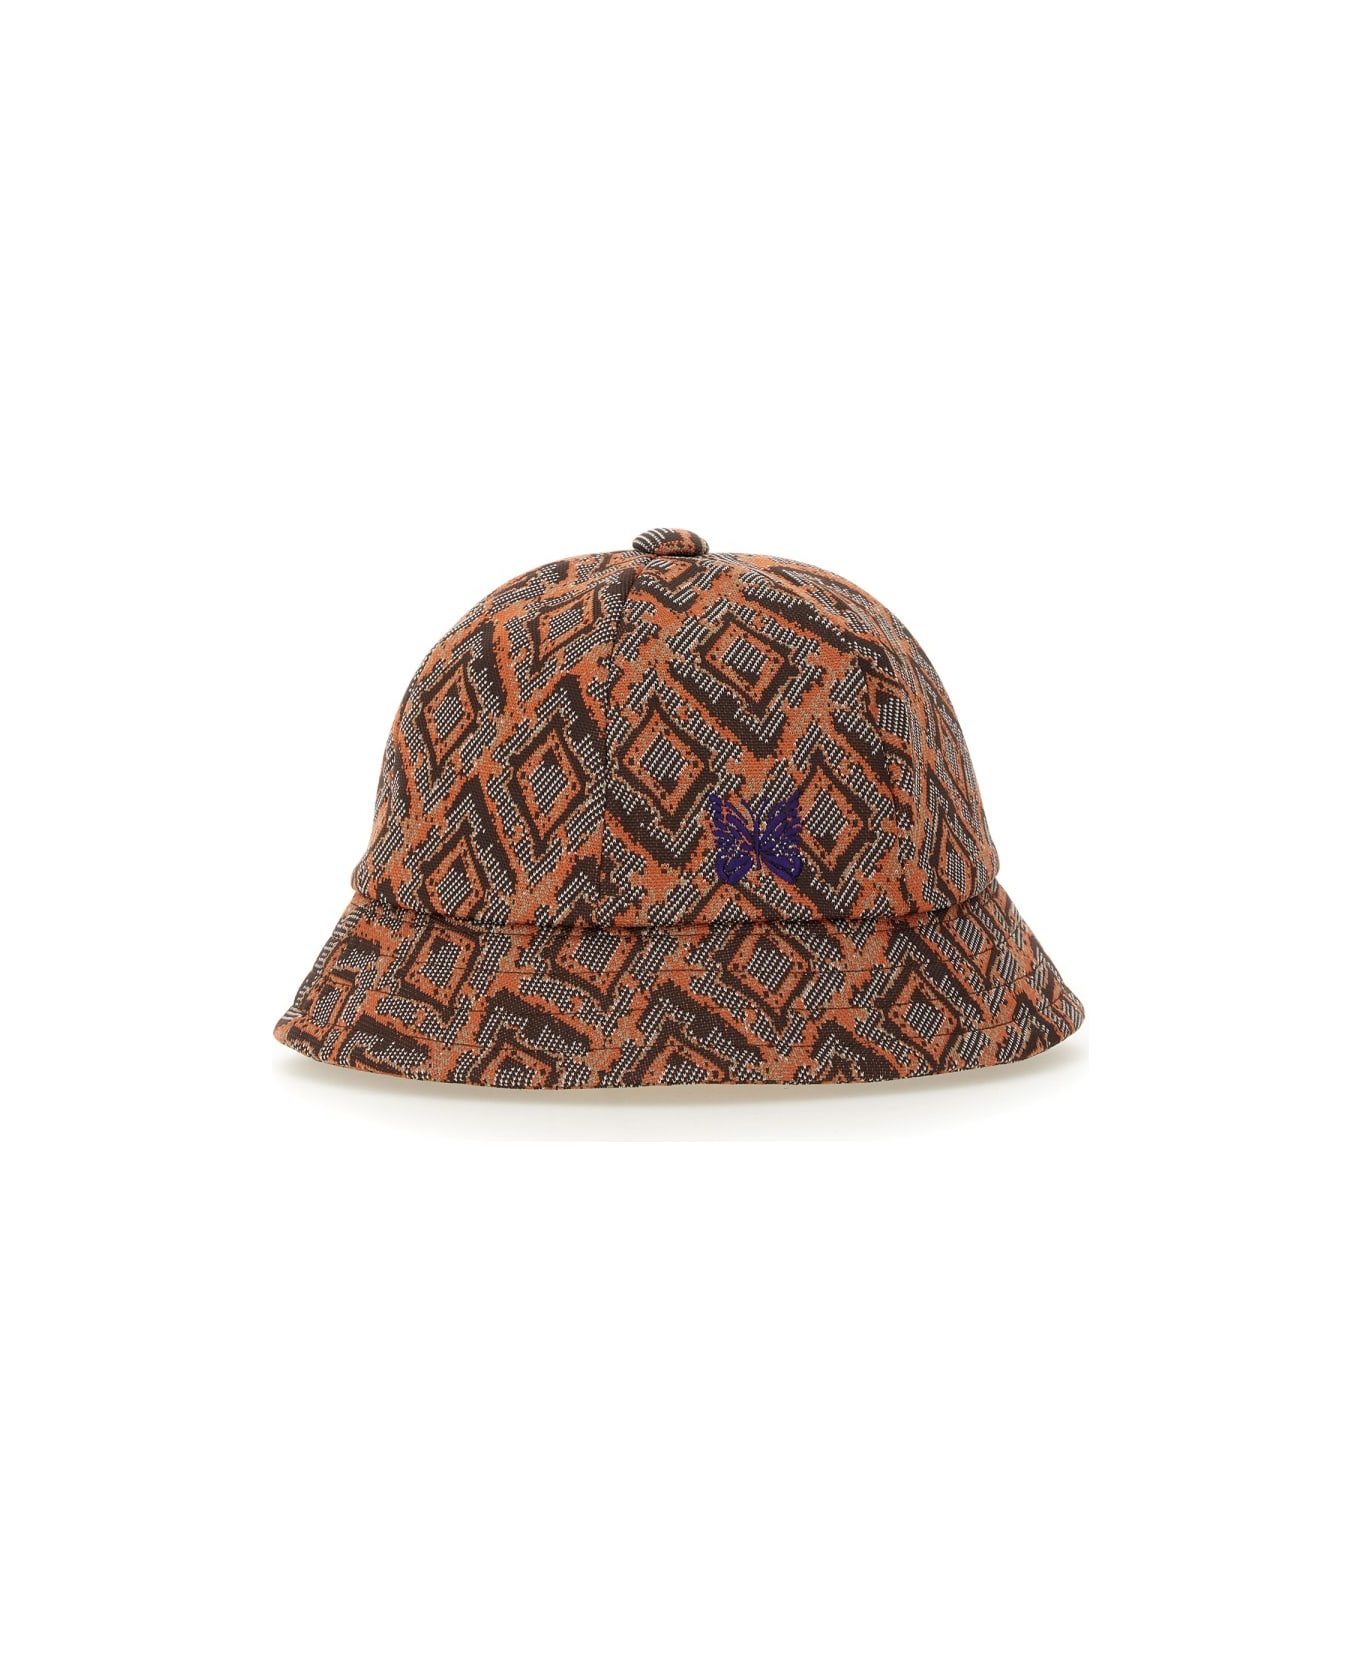 Needles Hat With Print - ORANGE 帽子